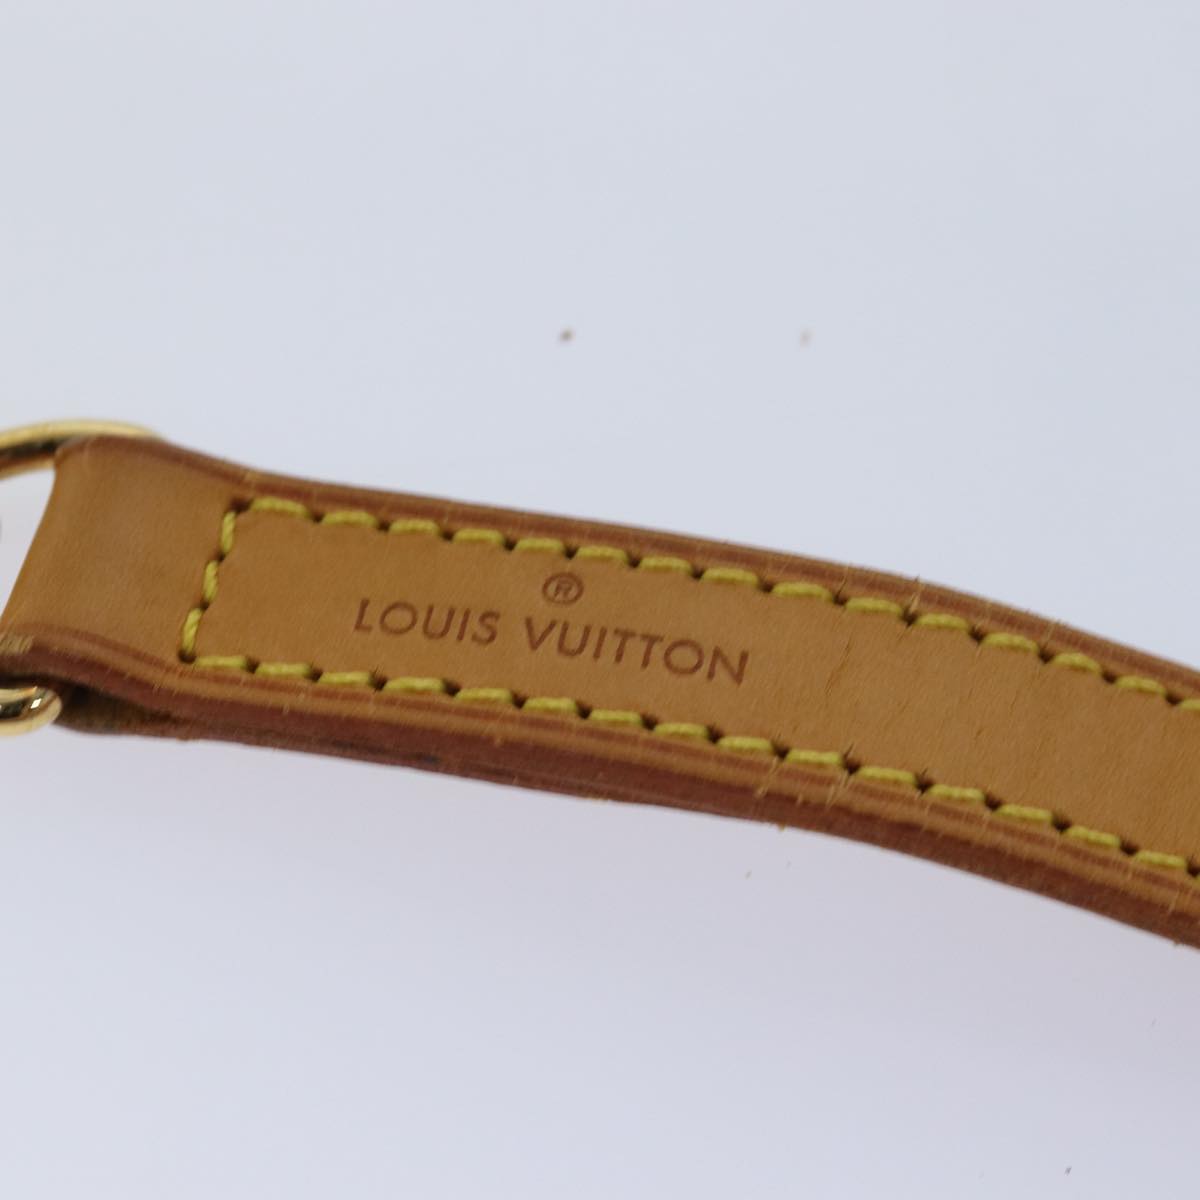 LOUIS VUITTON Shoulder Strap Leather 35.8"" Beige LV Auth 77044